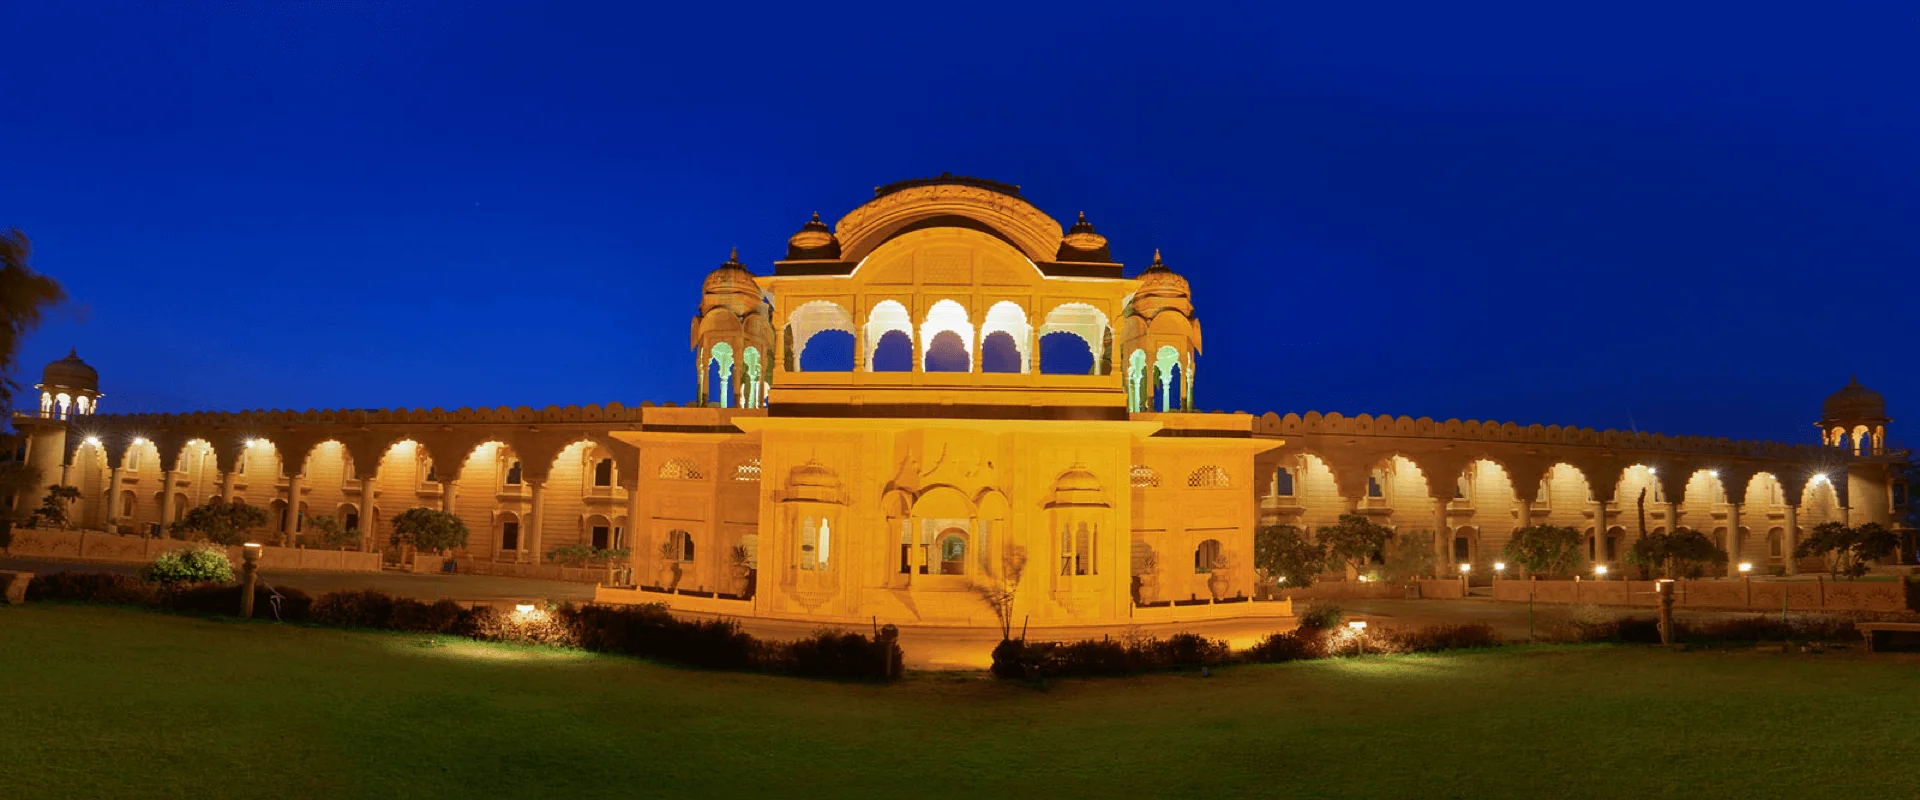 jaisalmer hotels, hotels in jaisalmer, hotel in jaisalmer, rajwada palace, jaisalmer rajasthan, jaisalmer india, best hotel in india